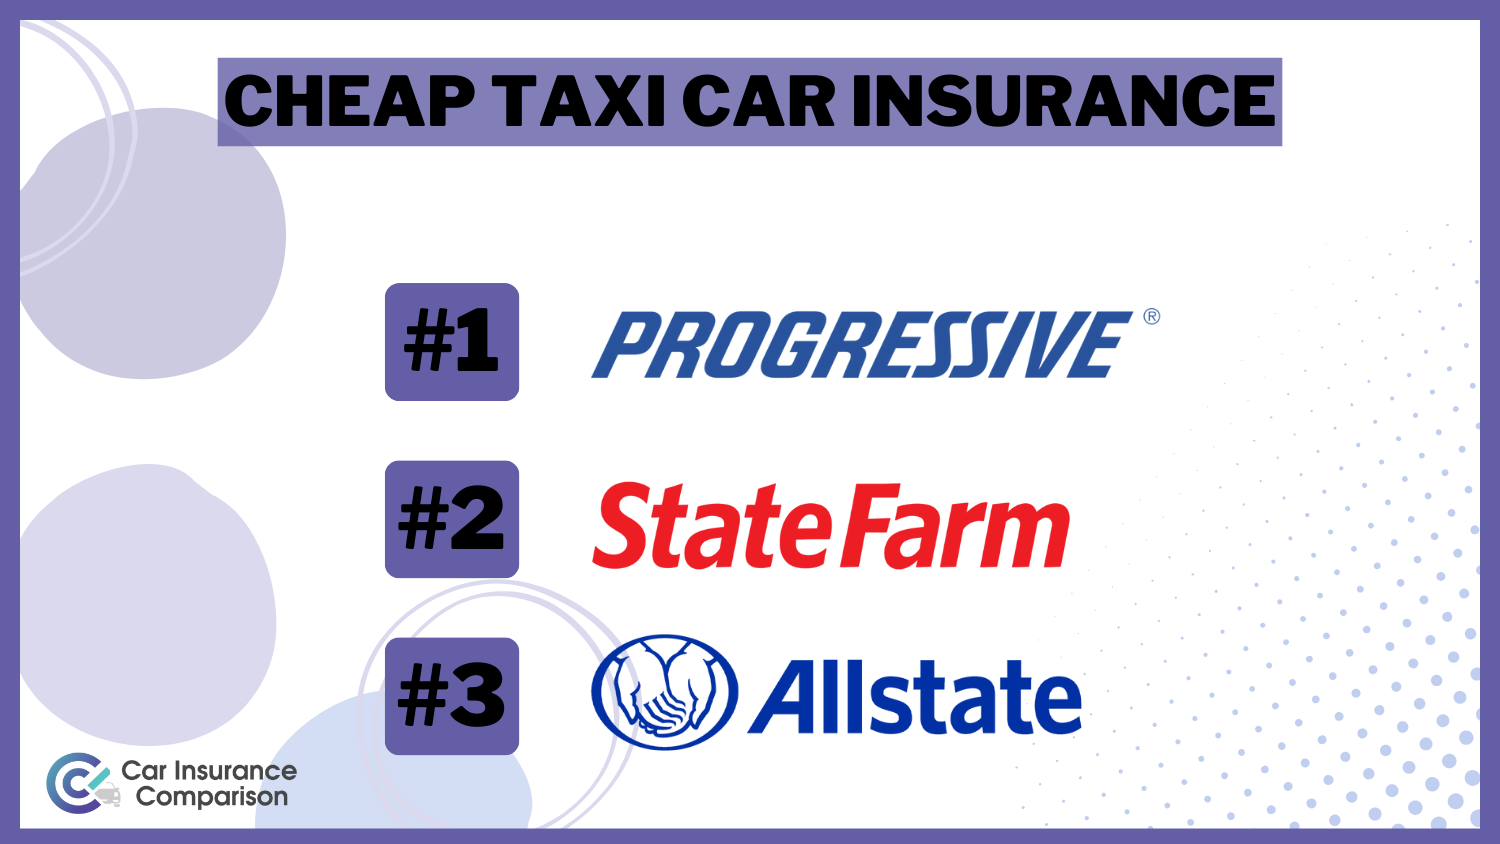 Cheap Taxi Car Insurance: Progressive, State Farm and Allstate